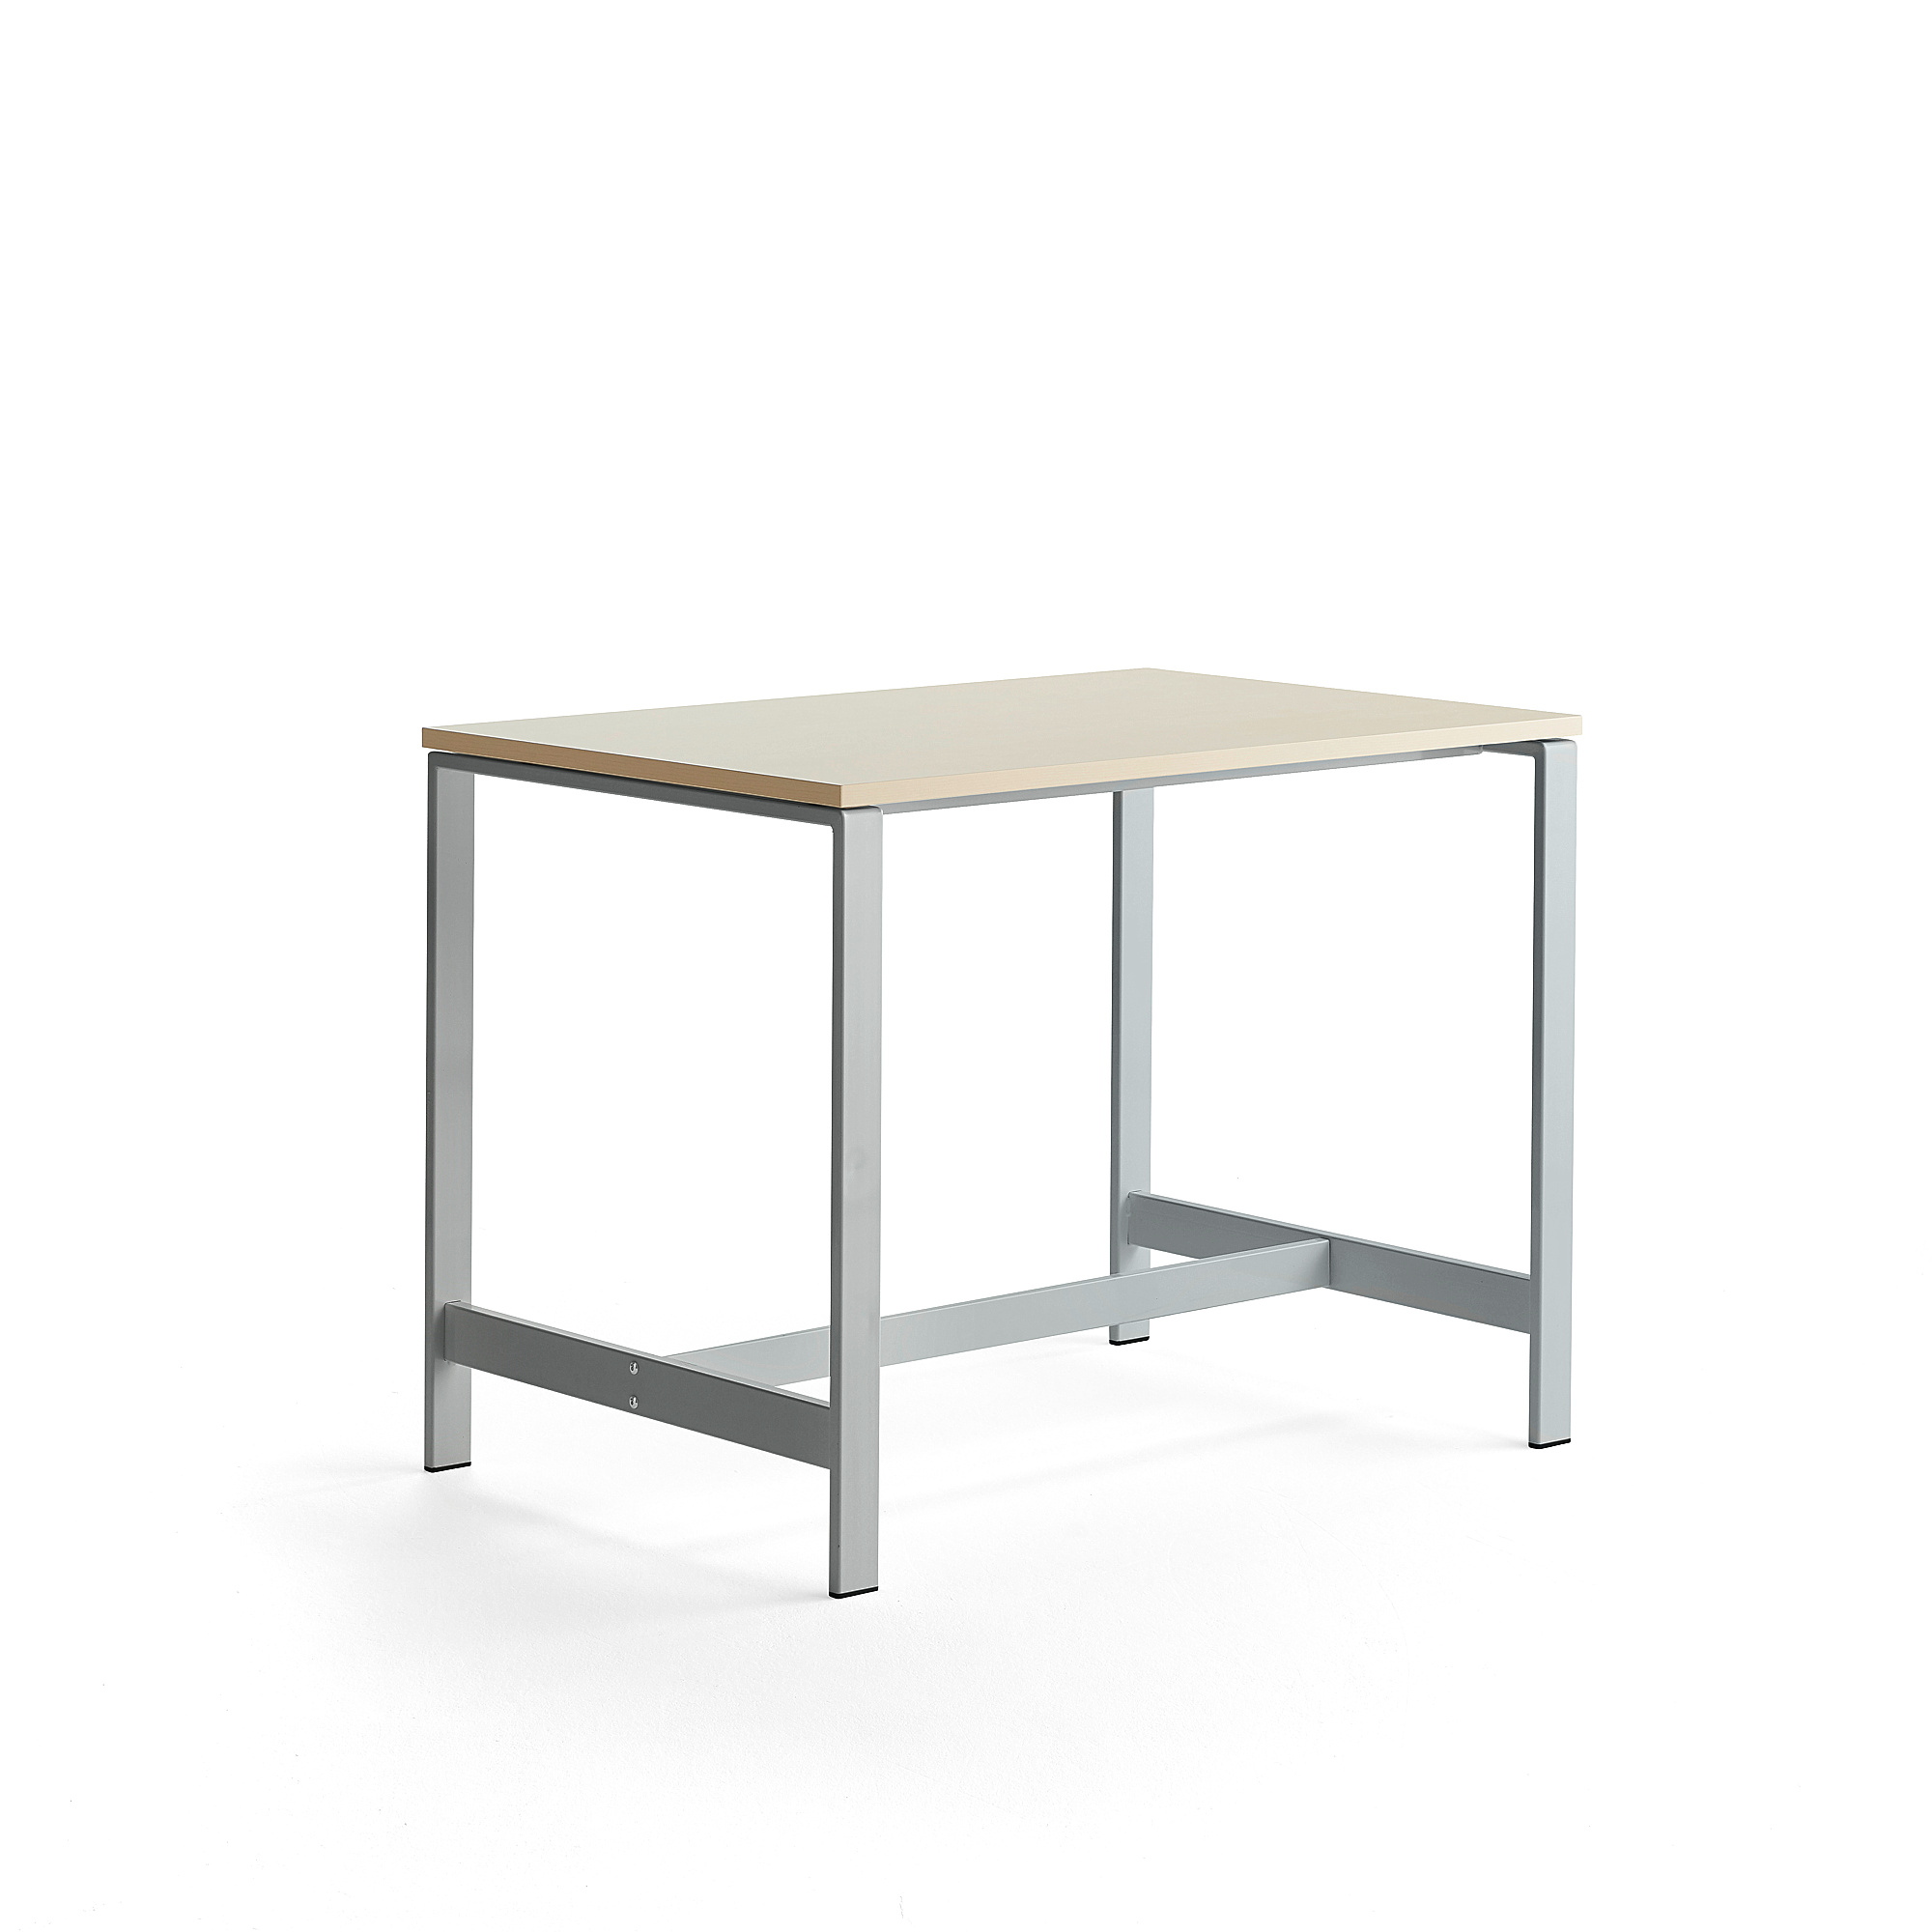 Stůl VARIOUS, 1200x800 mm, výška 900 mm, stříbrné nohy, bříza